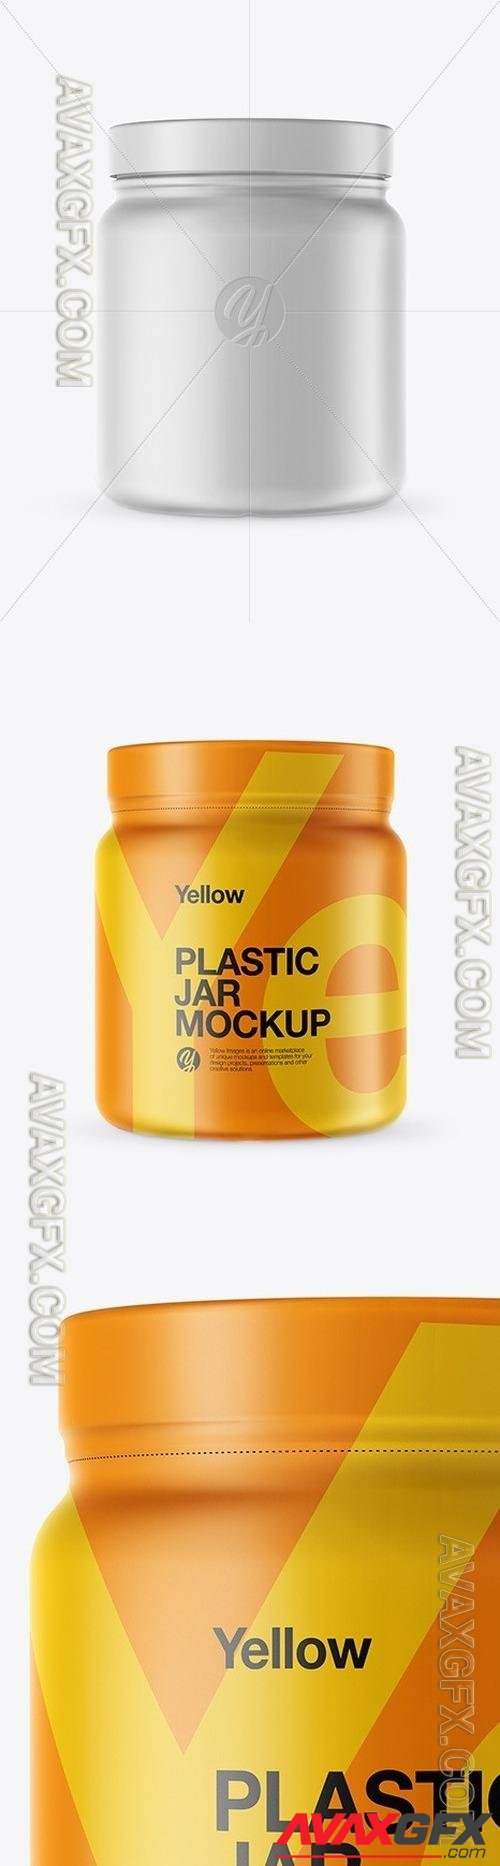 Matte Plastic Jar with Shrink Sleeve Mockup 48034 TIF